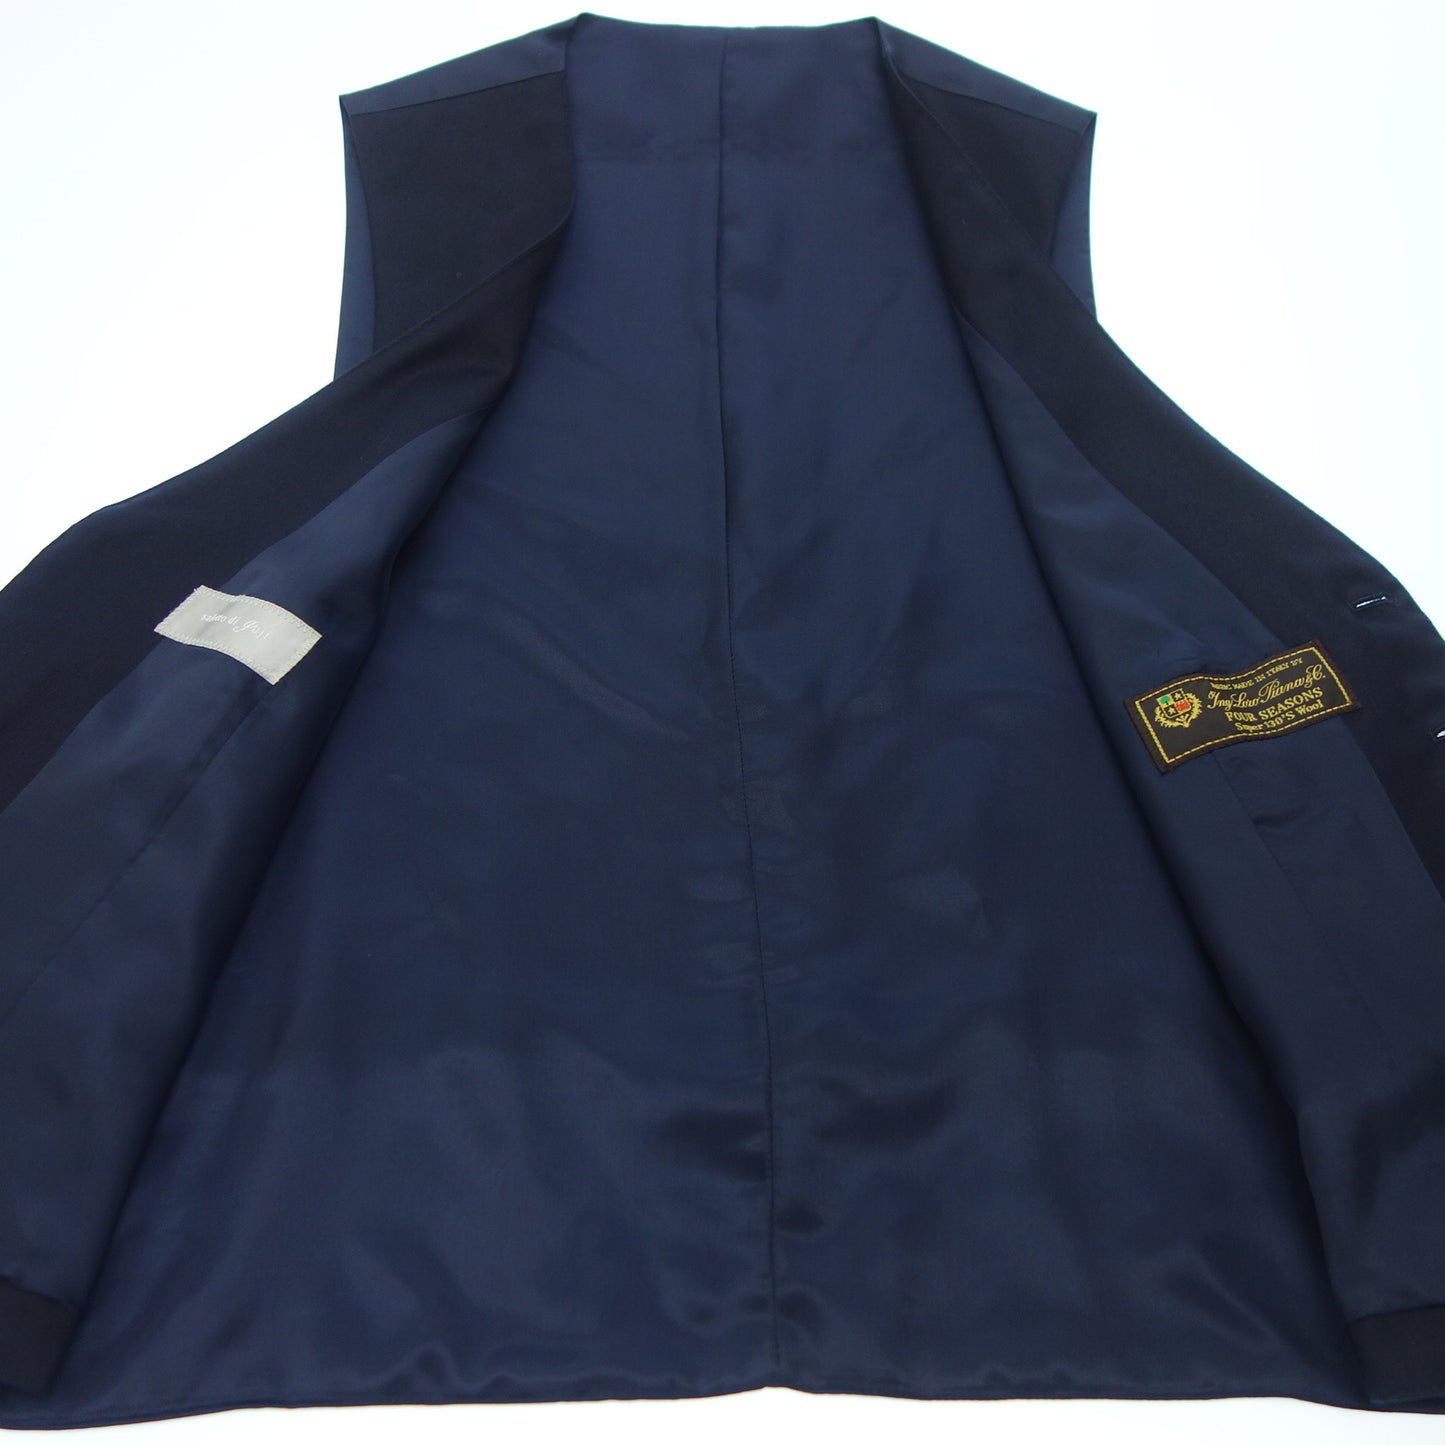 Salotto di guji gilet vest Loro Piana 48 men's navy salotto di guji [AFB37] [Used] 